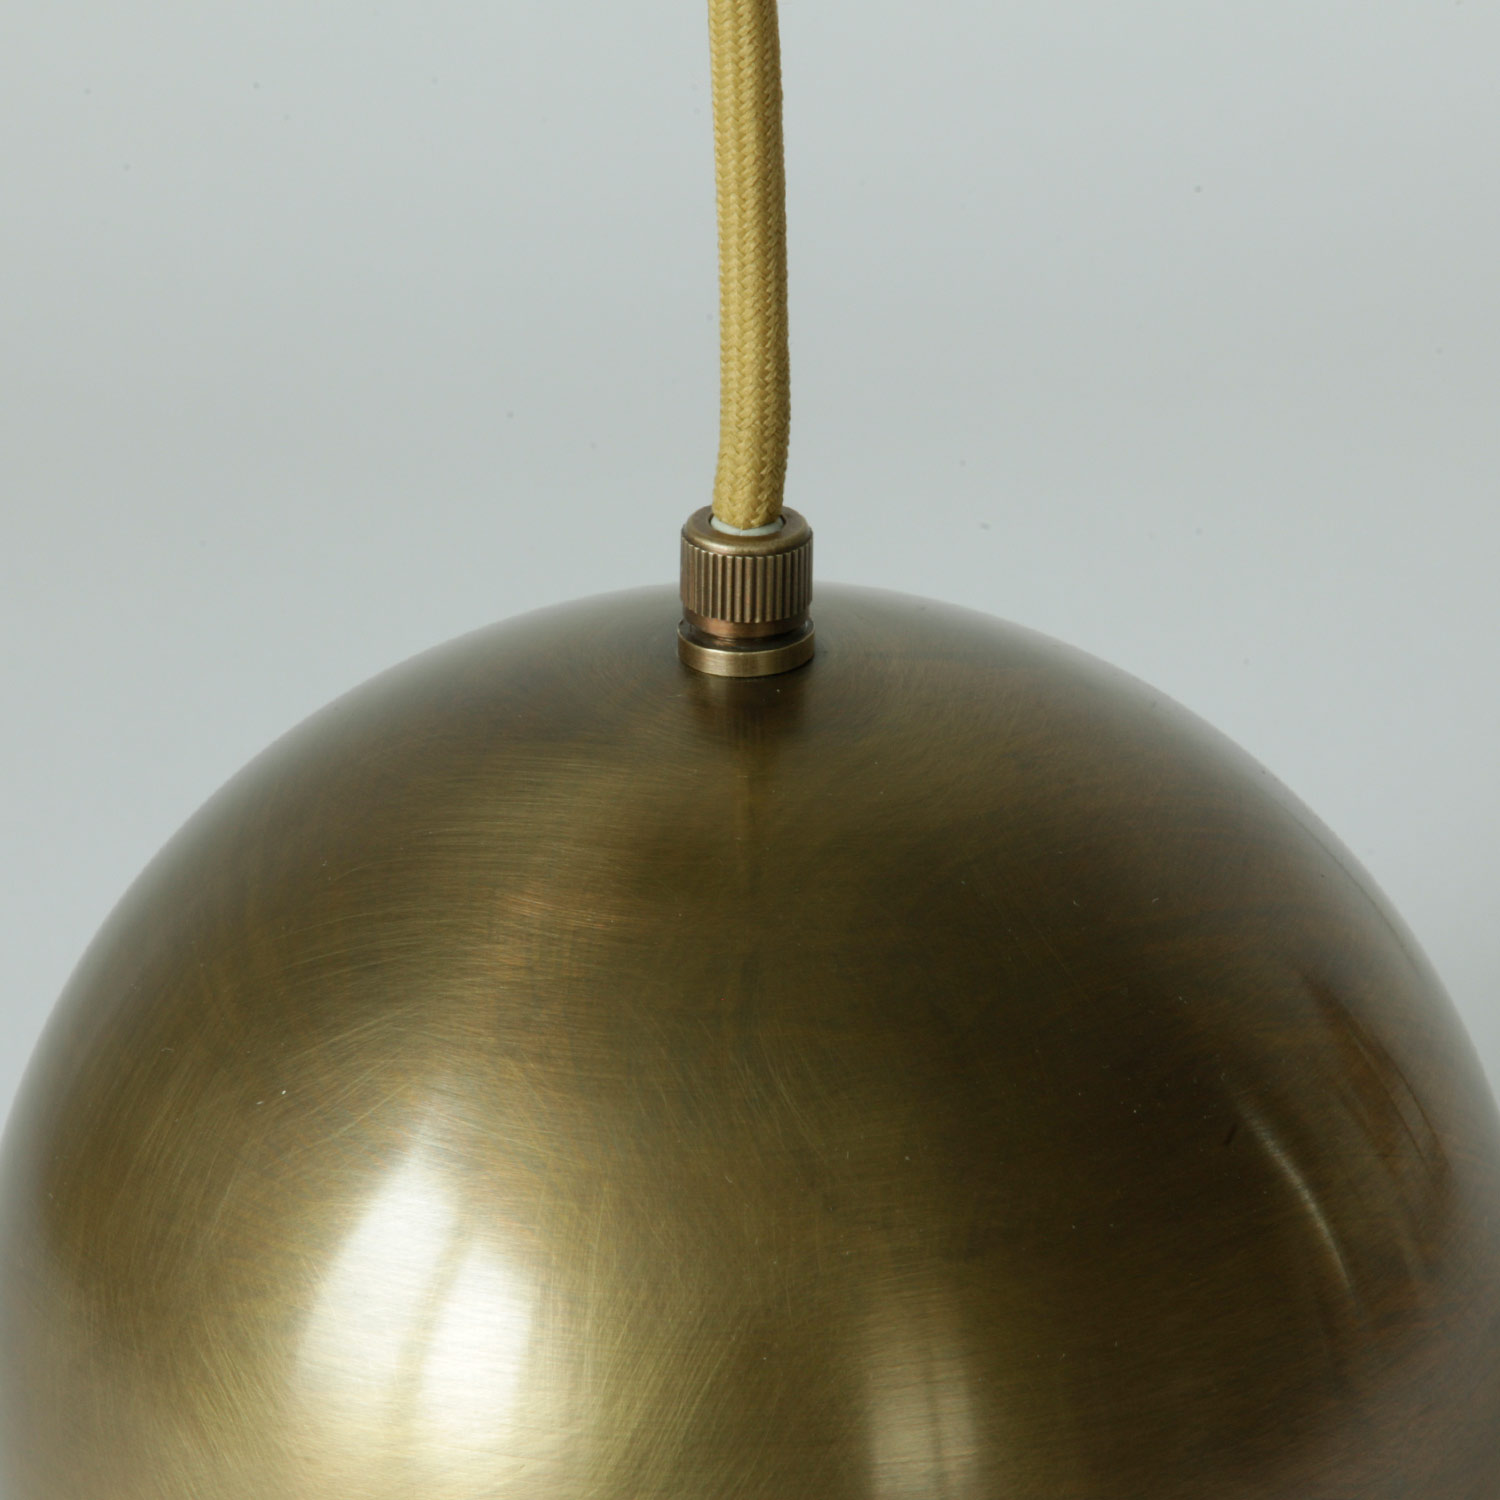 Dreiflammige Kugel-Pendelleuchte (je Ø 15 cm) aus Kupfer, Messing oder Alu: Aufhängung am Textikabel mit Zugentlastung, hier „Messing patiniert und lackiert“